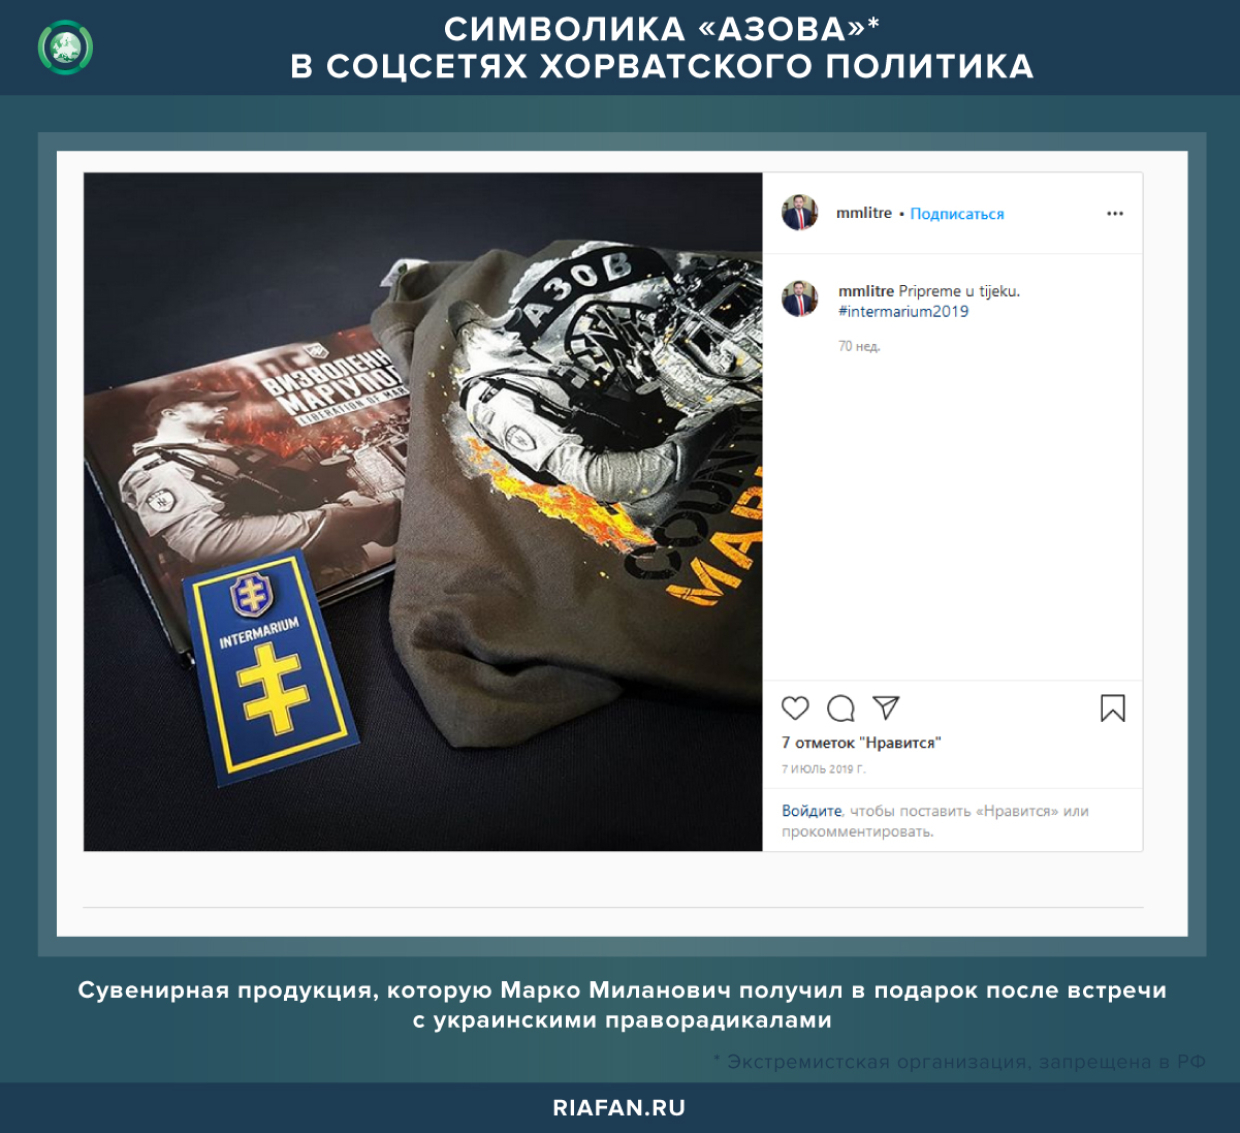 Символика «Азова» в соцсетях хорватского политика